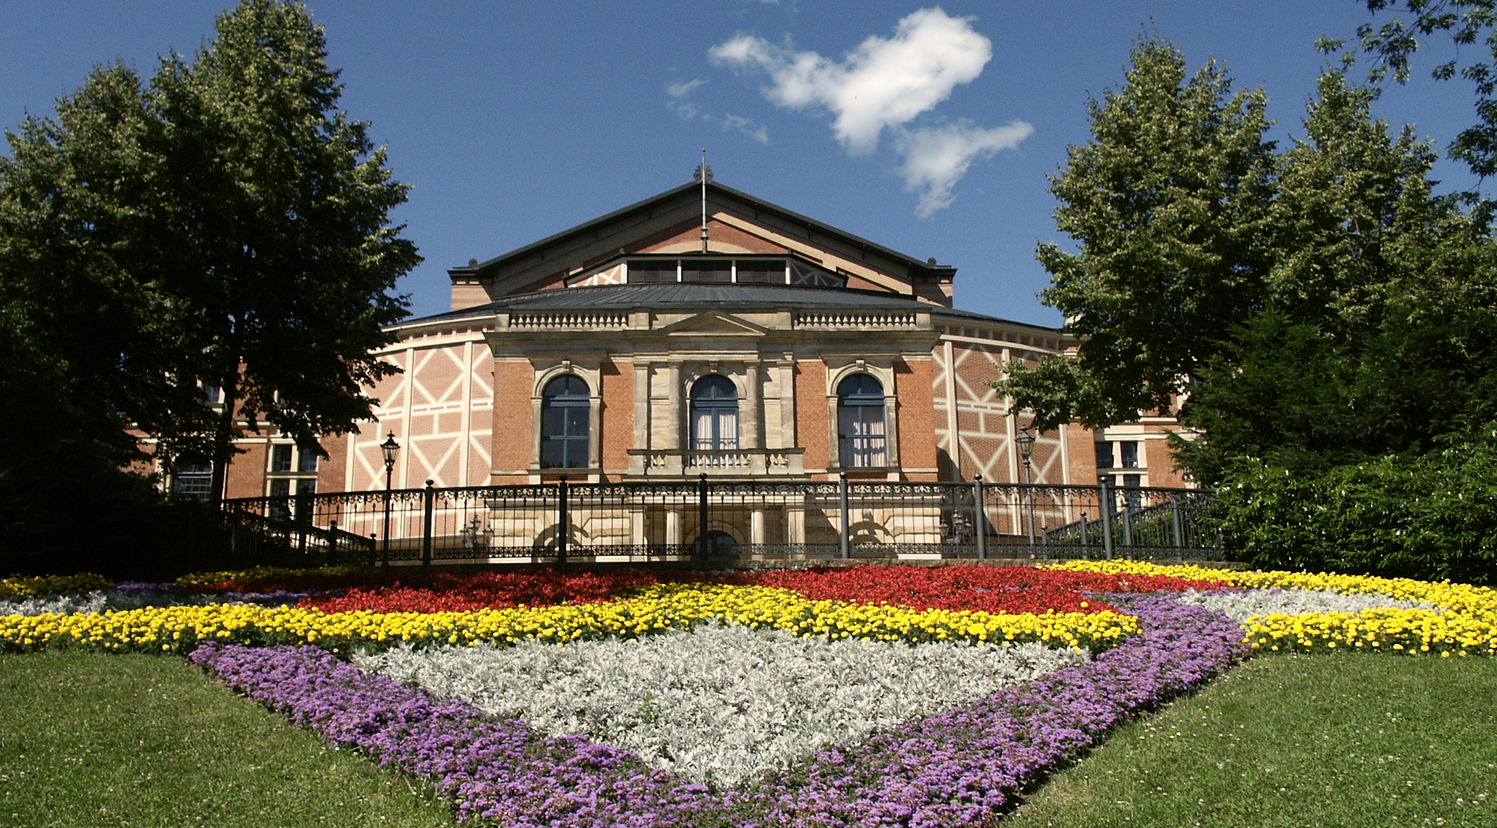 Un documentario sulla storia del Festival di Bayreuth. Christian Thielemann conversa con Wolfgang Wagner disegnando il percorso artistico e culturale di una istituzione mitica che sopravvive e si rinnova nella modernità